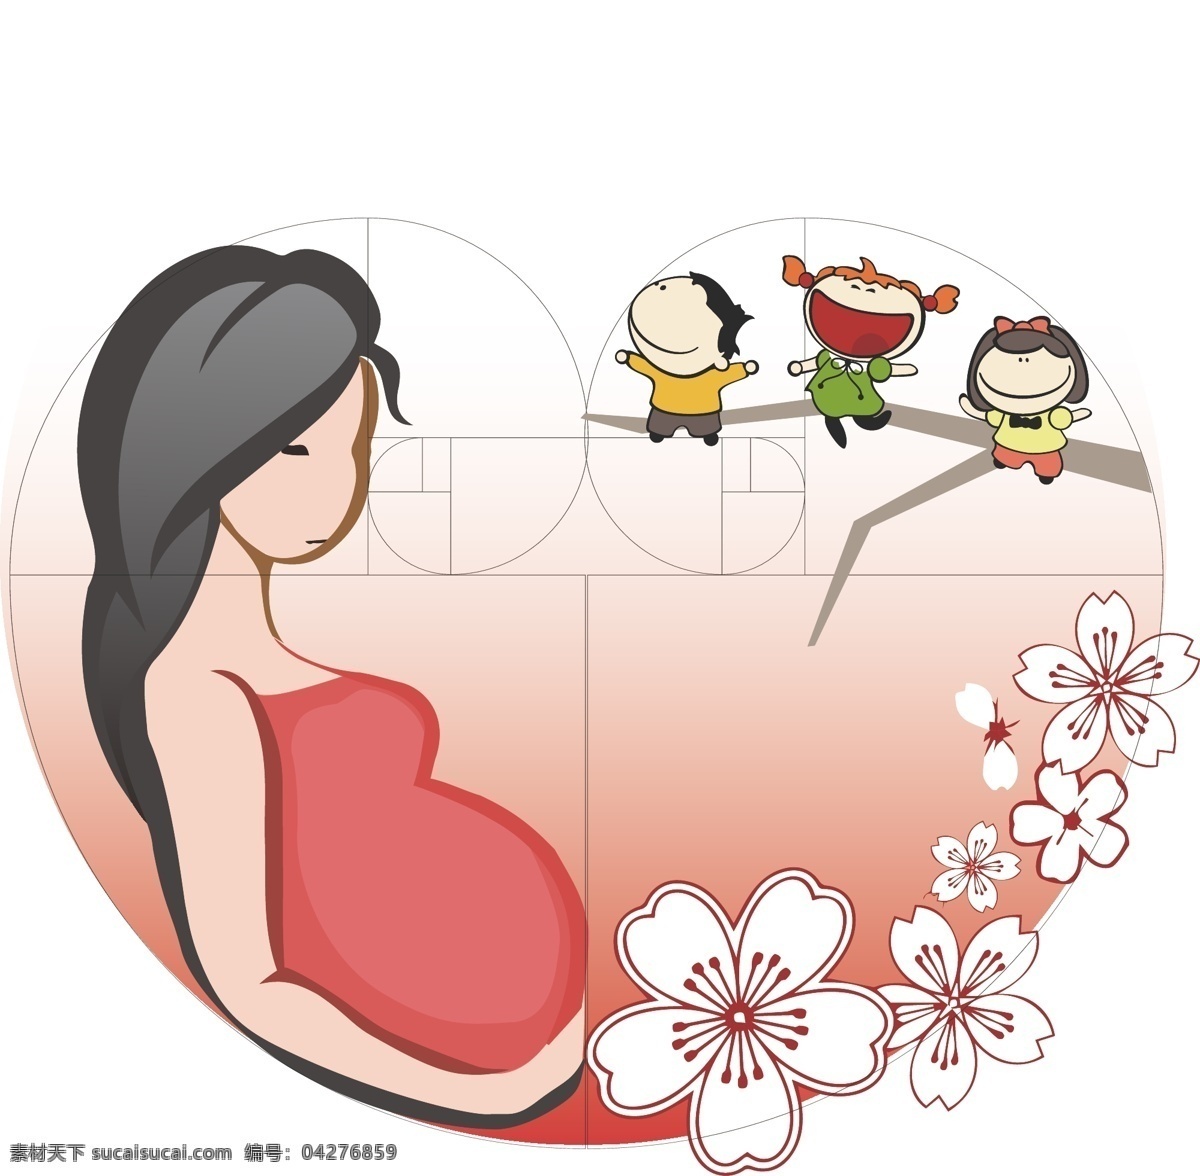 黄金分割 粉色 孕妇 卡通 插图 多维 维生素 保健品 插画 怀孕 宝宝 暖色 瓶贴 包装 白色